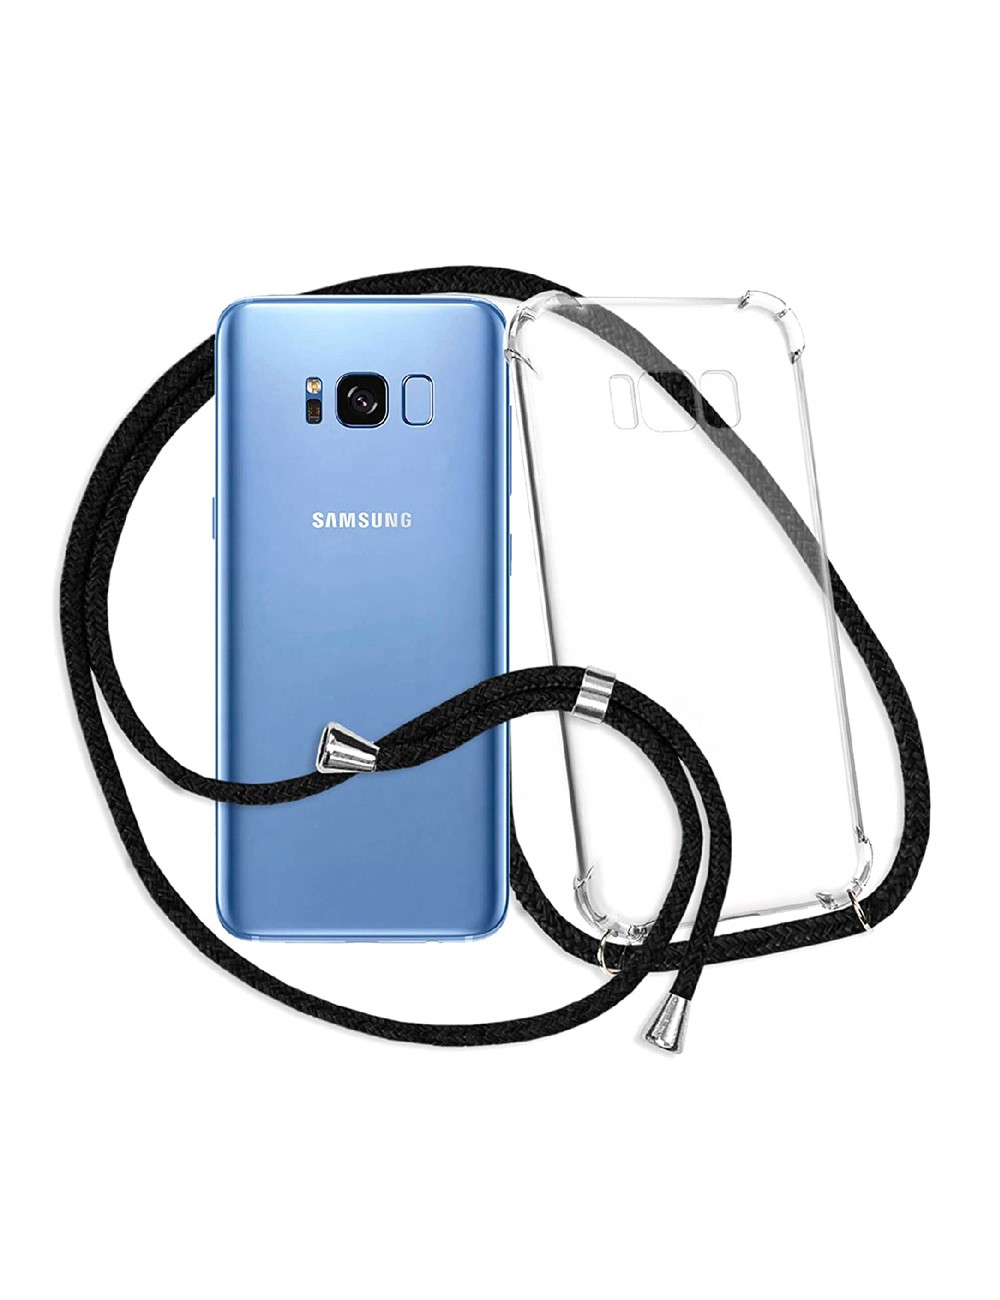 jury Ontleden Implicaties Samsung Galaxy S8 Plus transparant TPU hoesje met koord